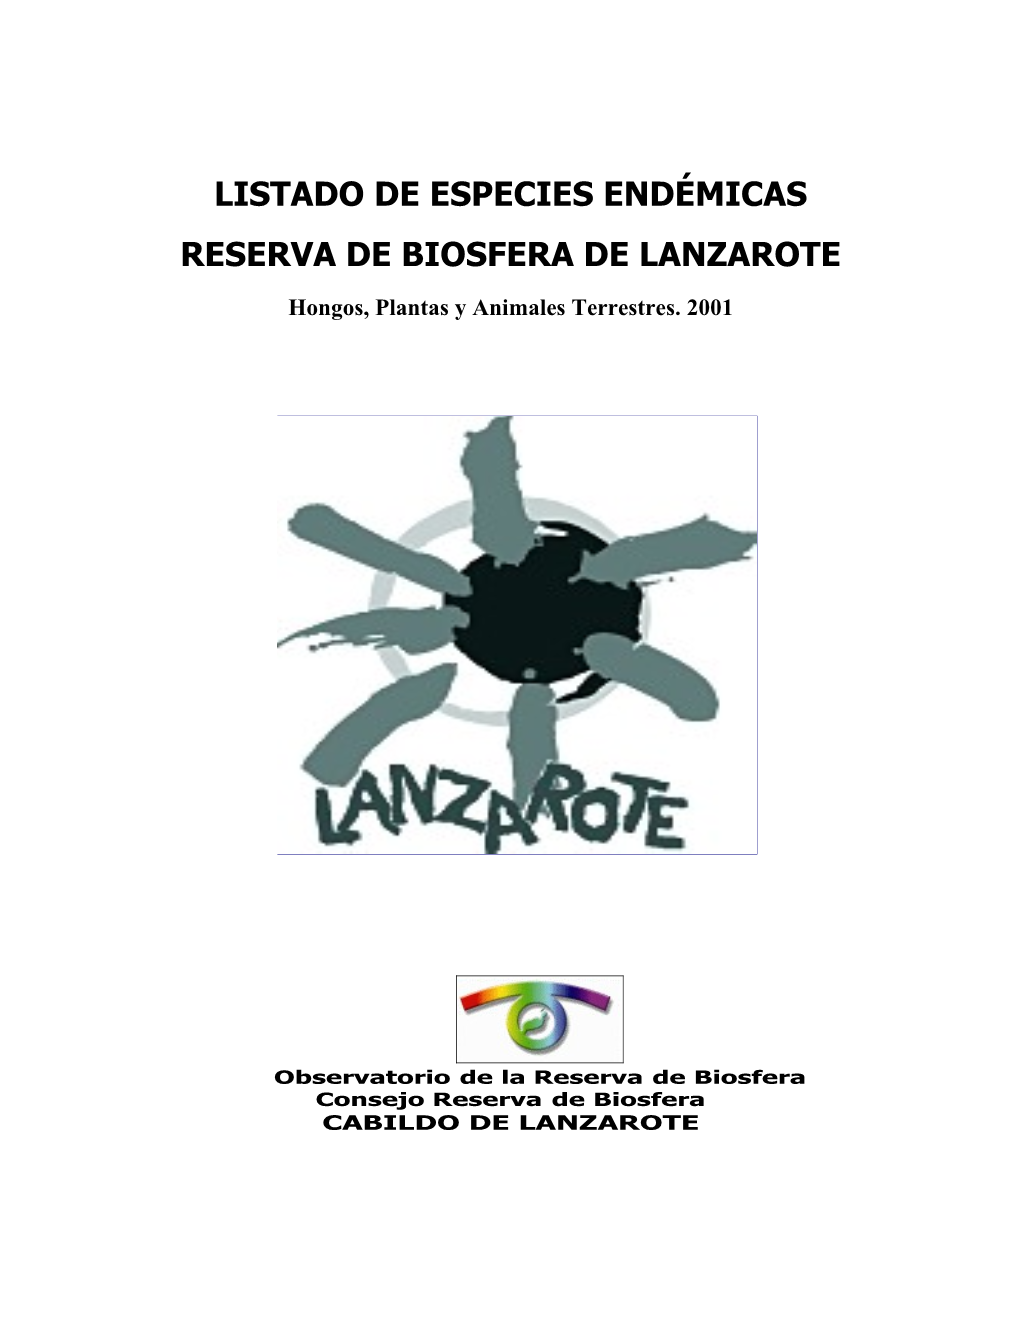 Listado De Especies Endémicas De Lanzarote